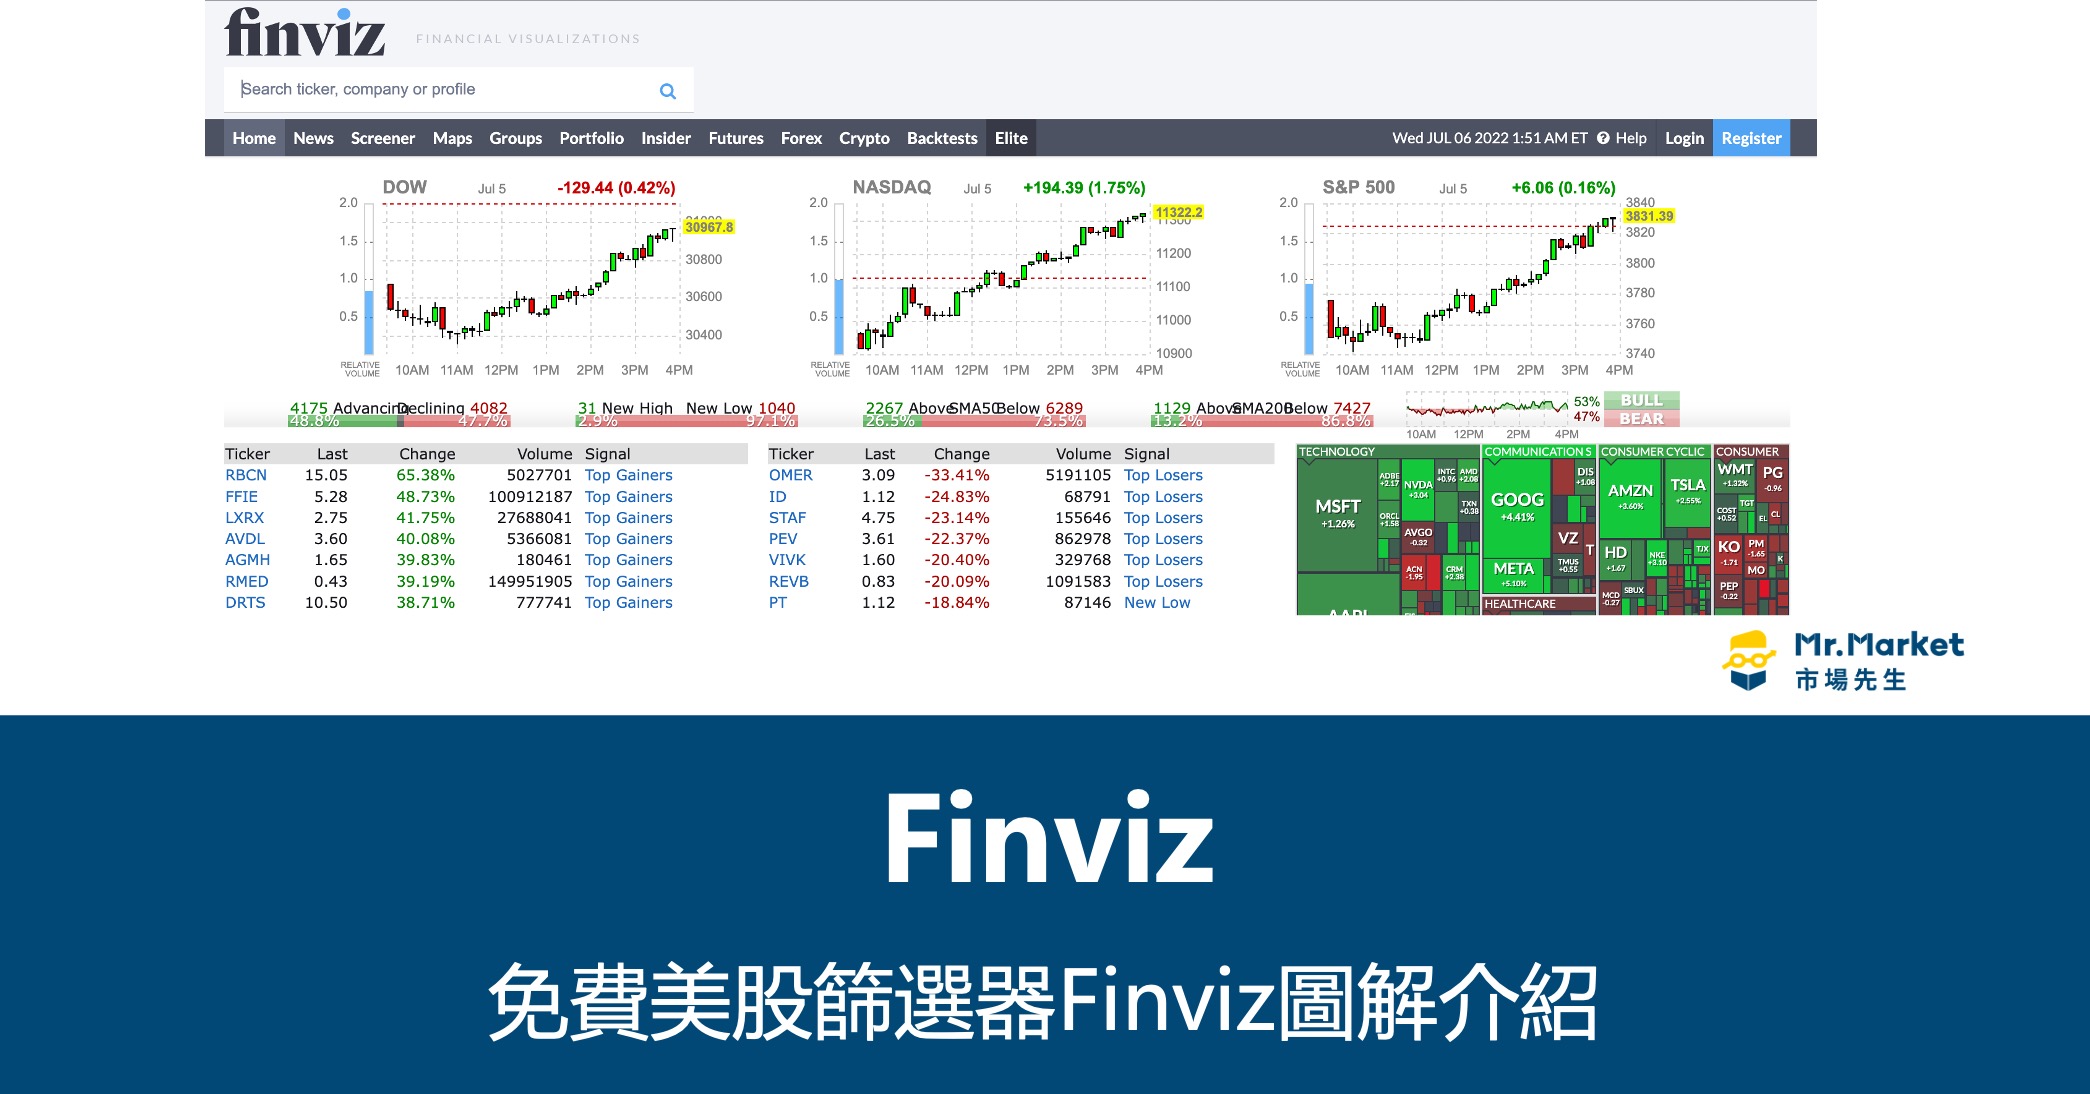 免費美股篩選器Finviz圖解介紹》用Finviz看全球市場漲幅、篩選股票 操作教學